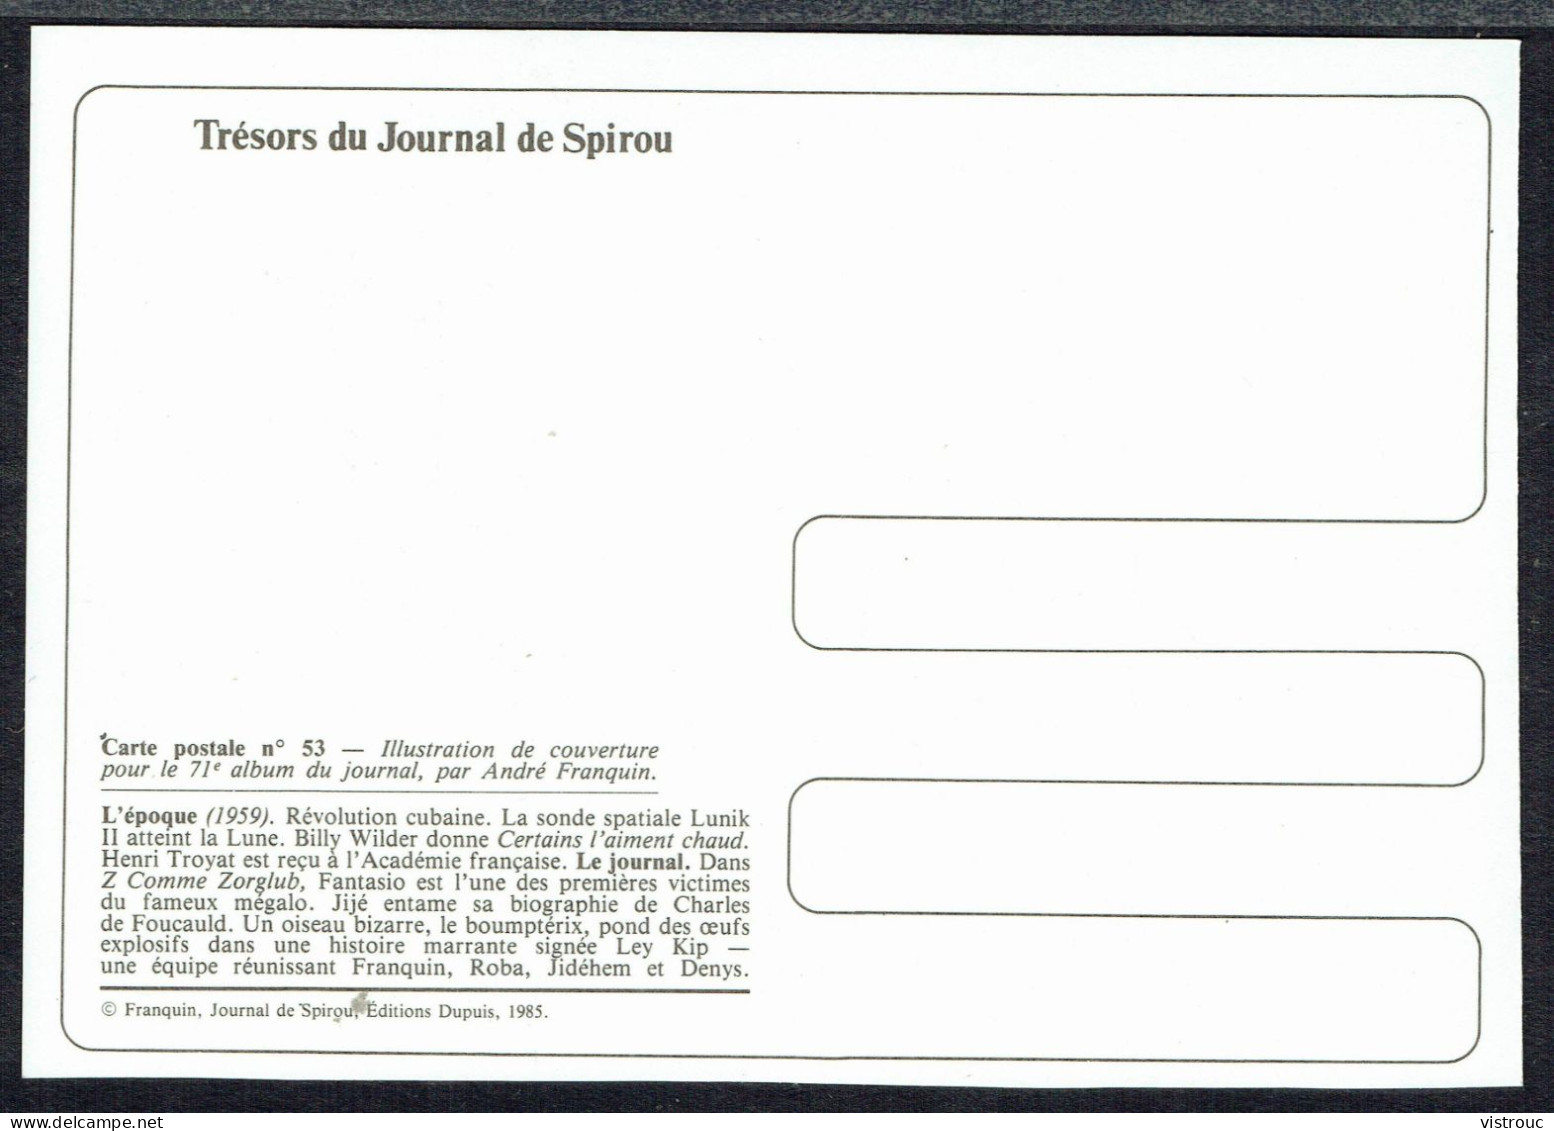 SPIROU - CP N° 53 : Illustration Couverture Album N° 71 De FRANQUIN - Non Circulé - Not Circulated - Ed. DUPUIS - 1985. - Bandes Dessinées